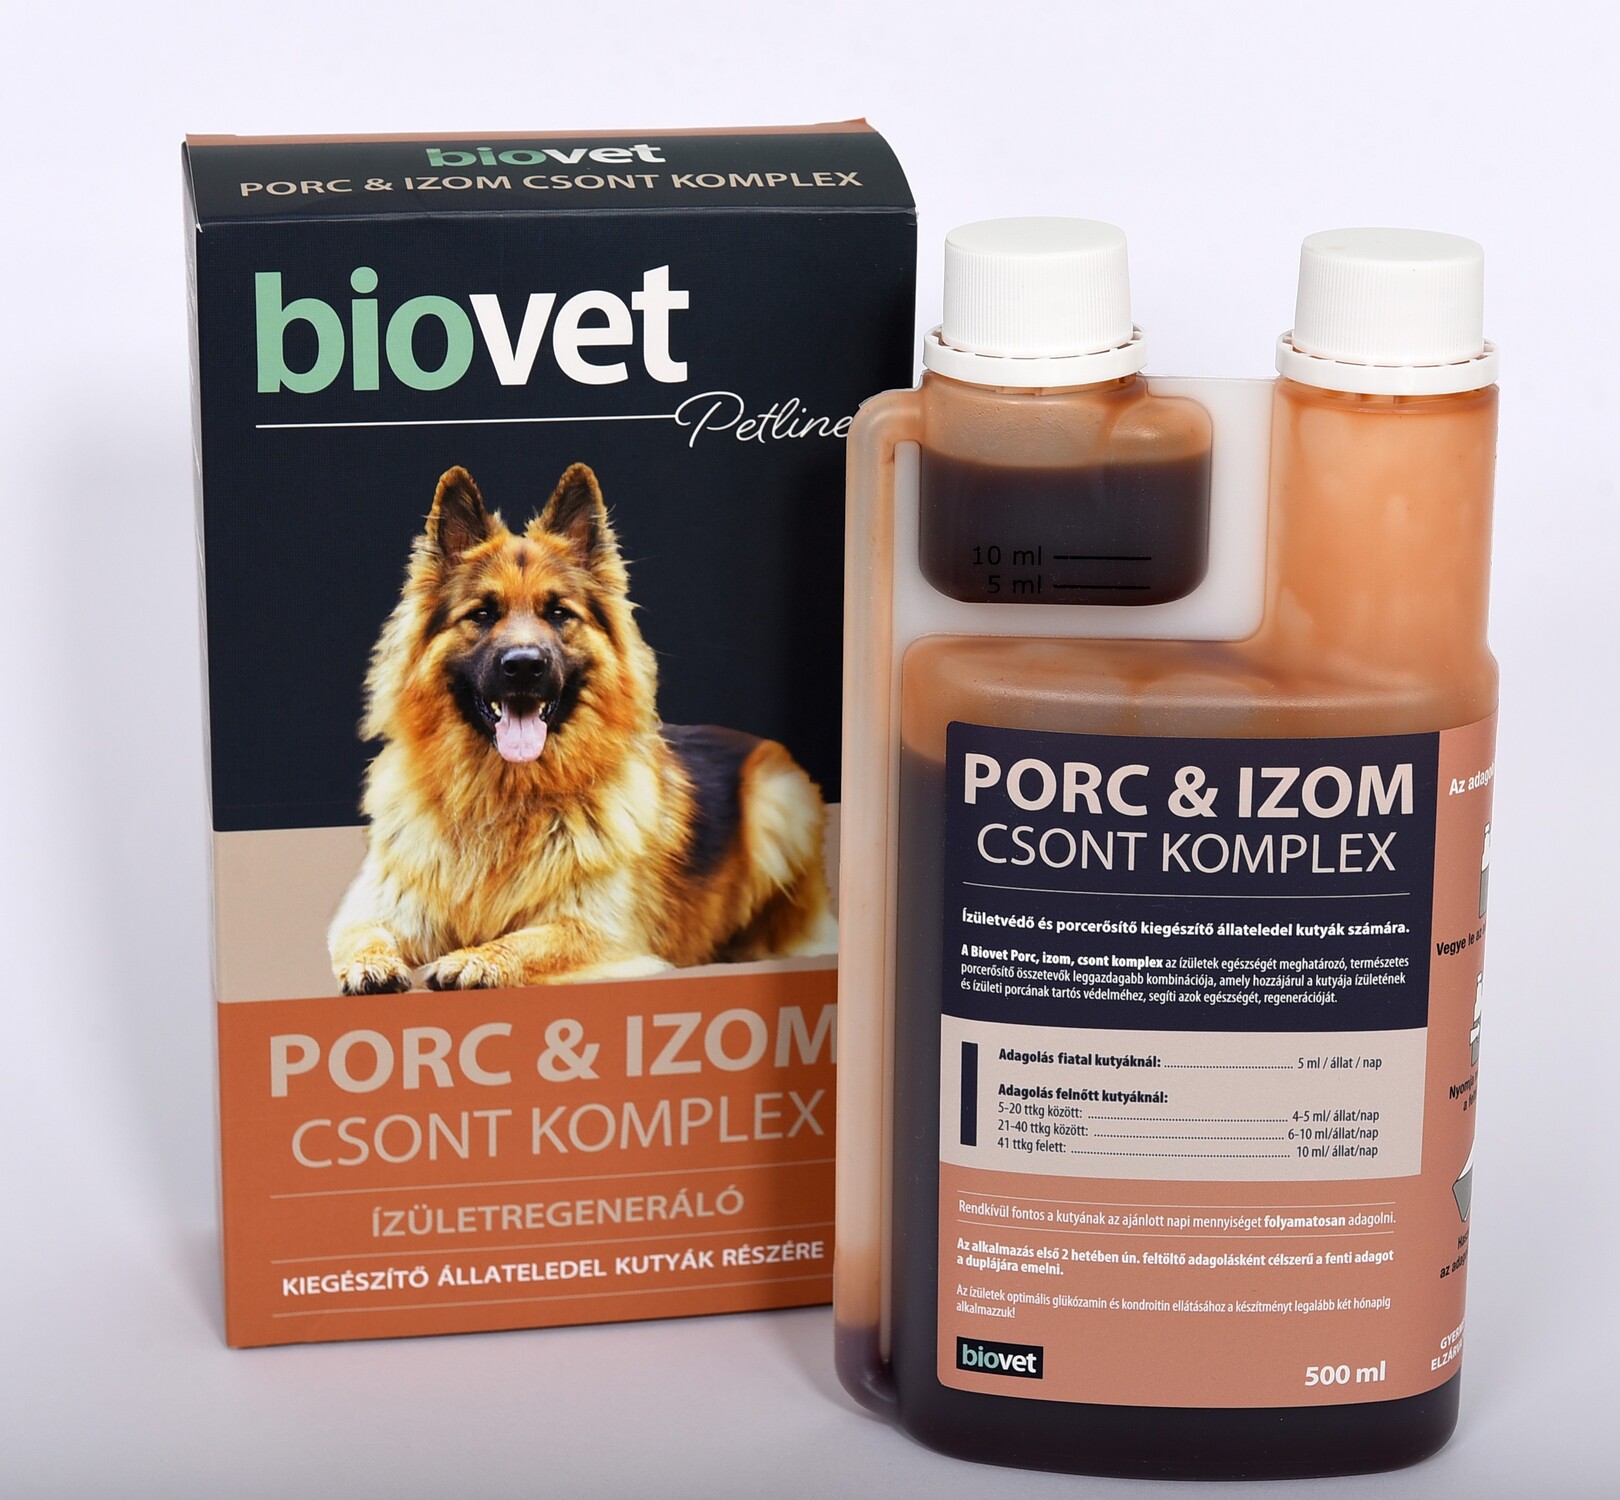 Biovet Cartilaje & Mușchi | Complex pentru oase sub formă de sirop pentru câini